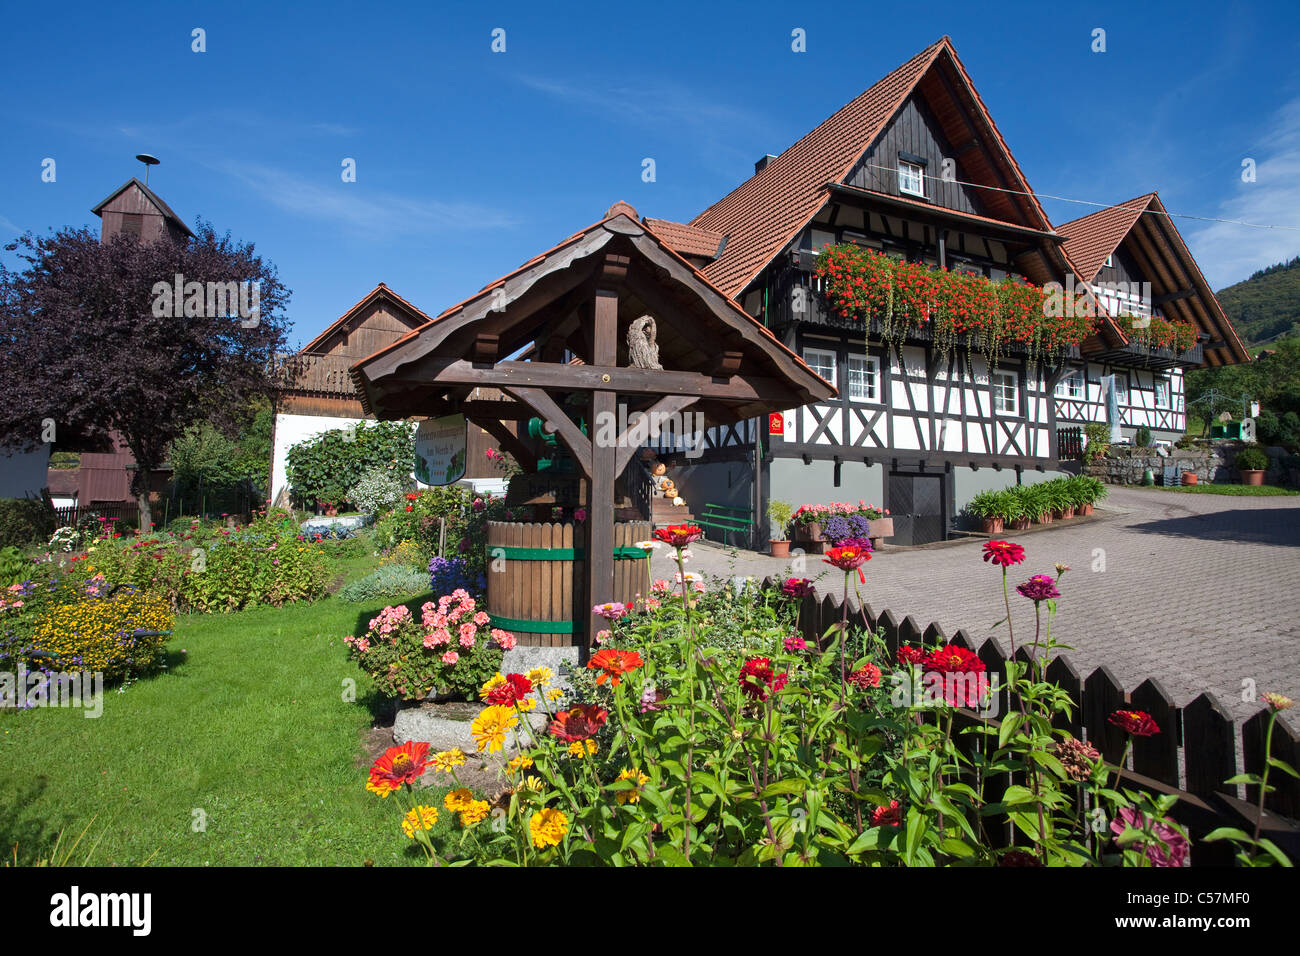 Bauernhaus und Bauerngarten, Blumengarten en Sasbachwalden, agricultor casa y jardín de flores Foto de stock